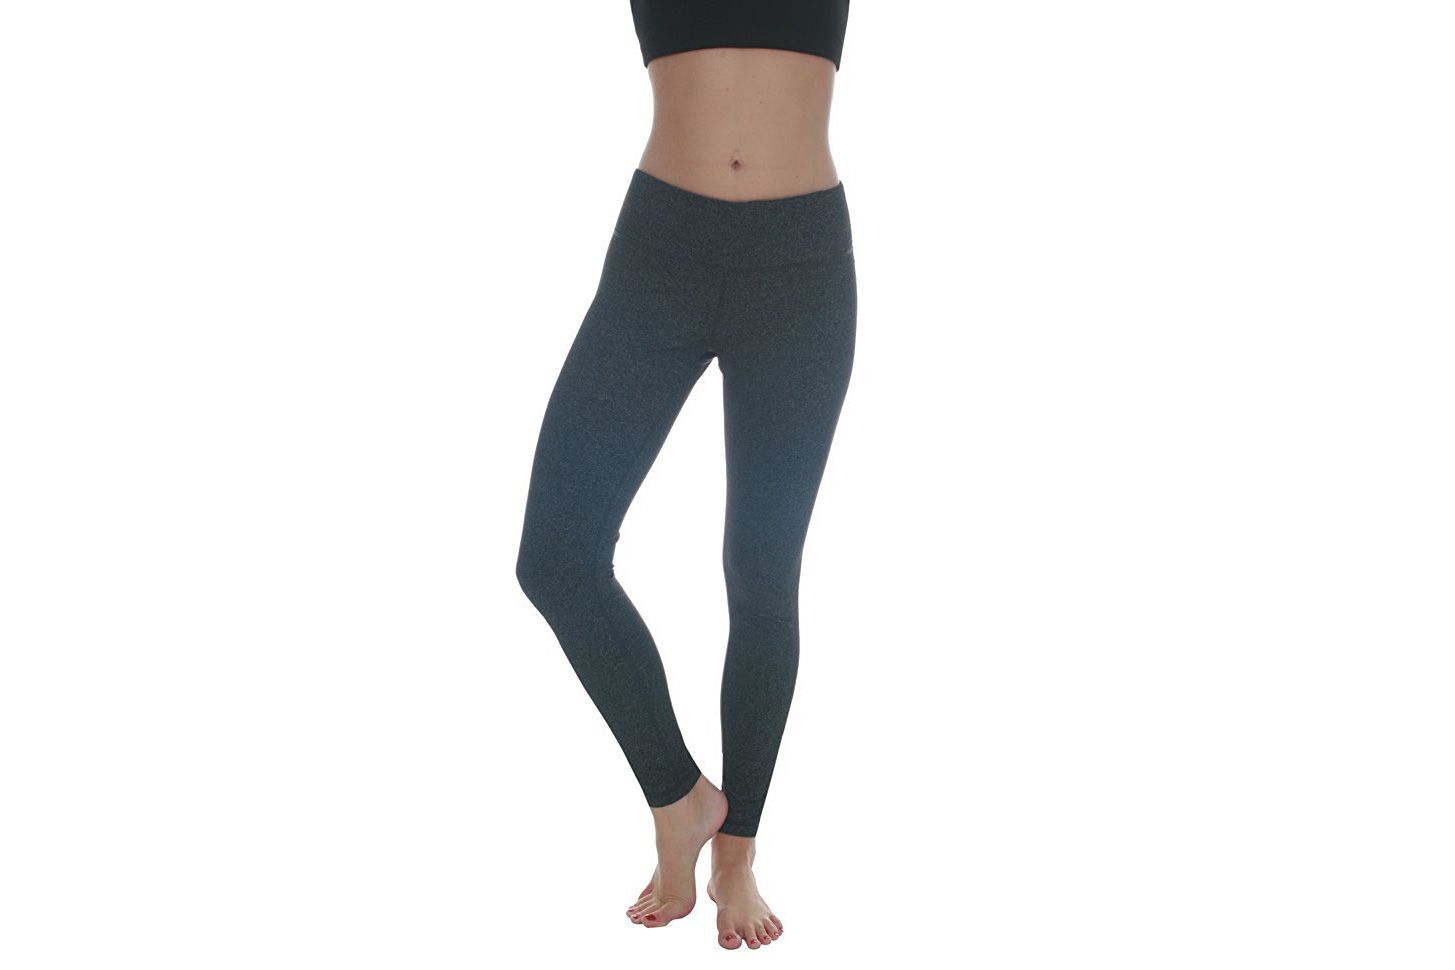 90 βαθμοί από παντελόνι Power Flex Yoga γυναικών Reflex